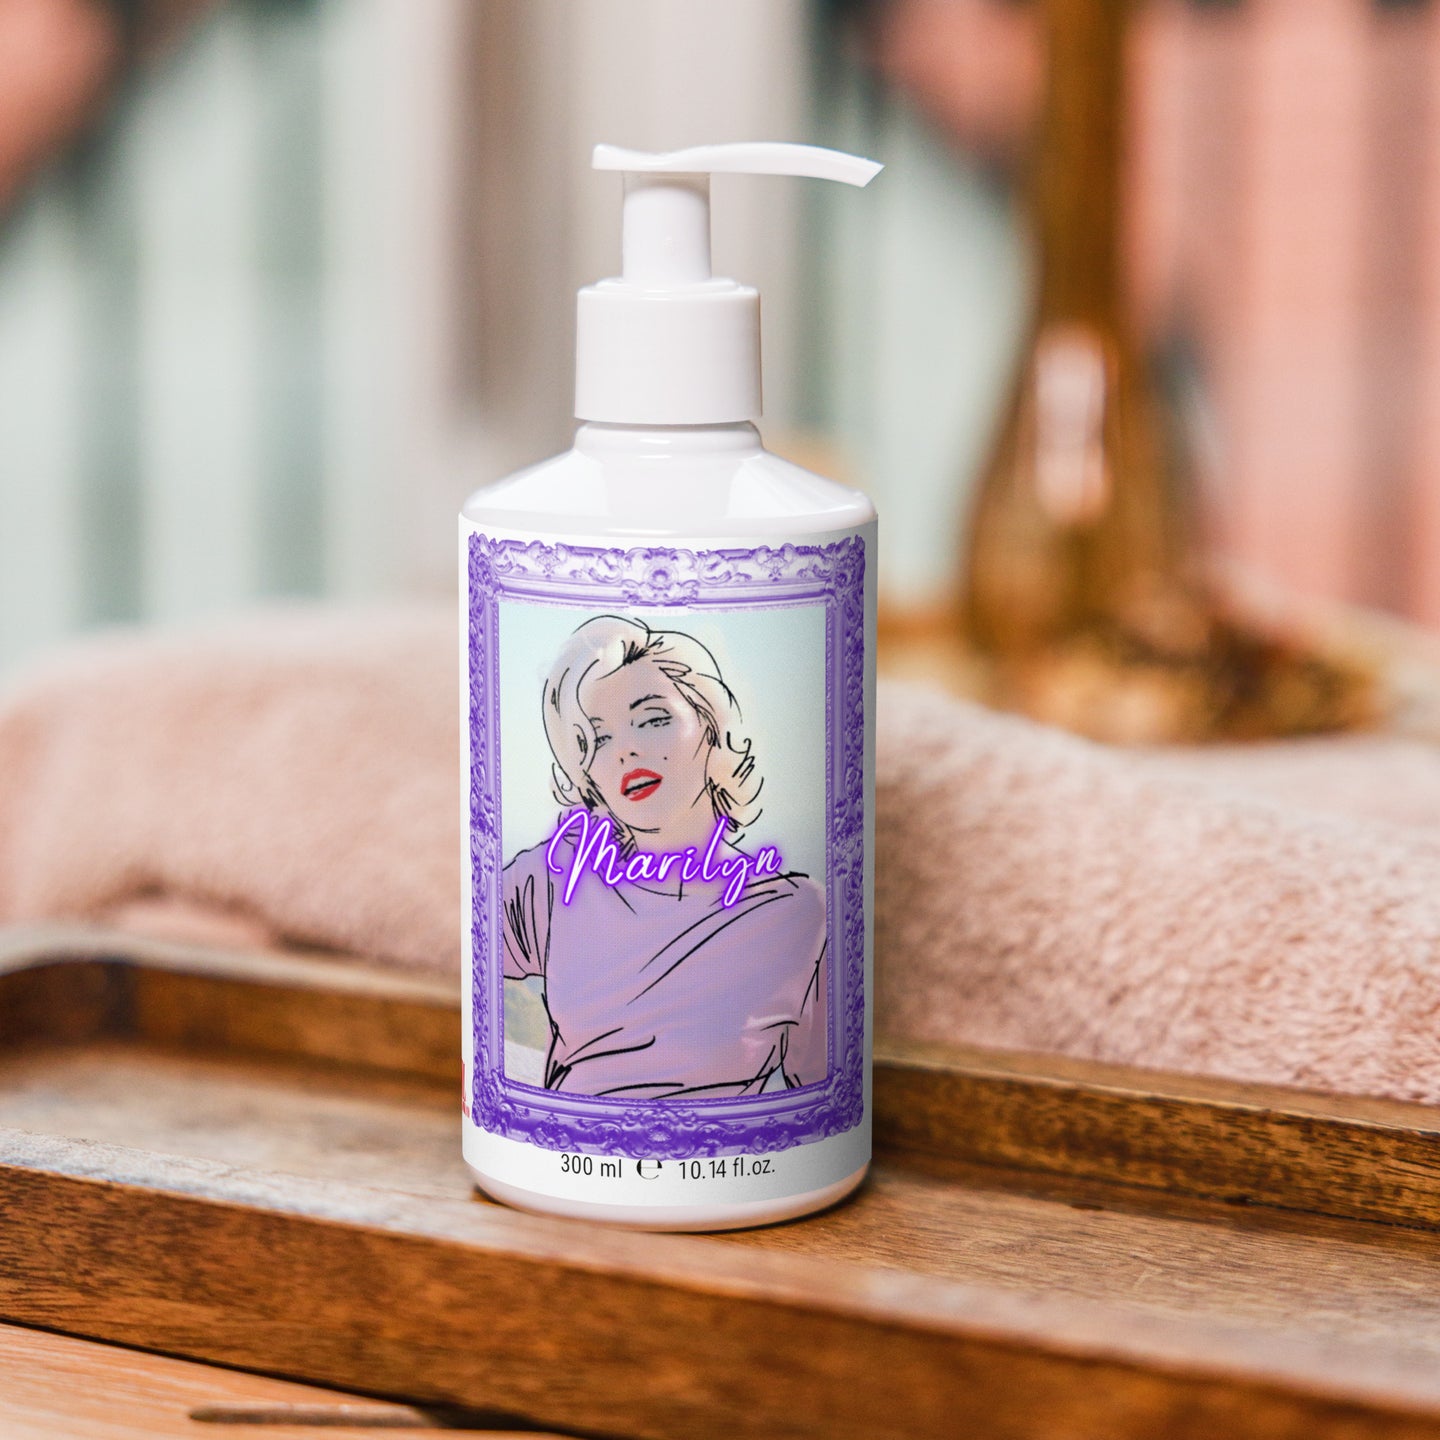 Marilyn Monroe Organic Essential Oils Floral Hand & Body Wash